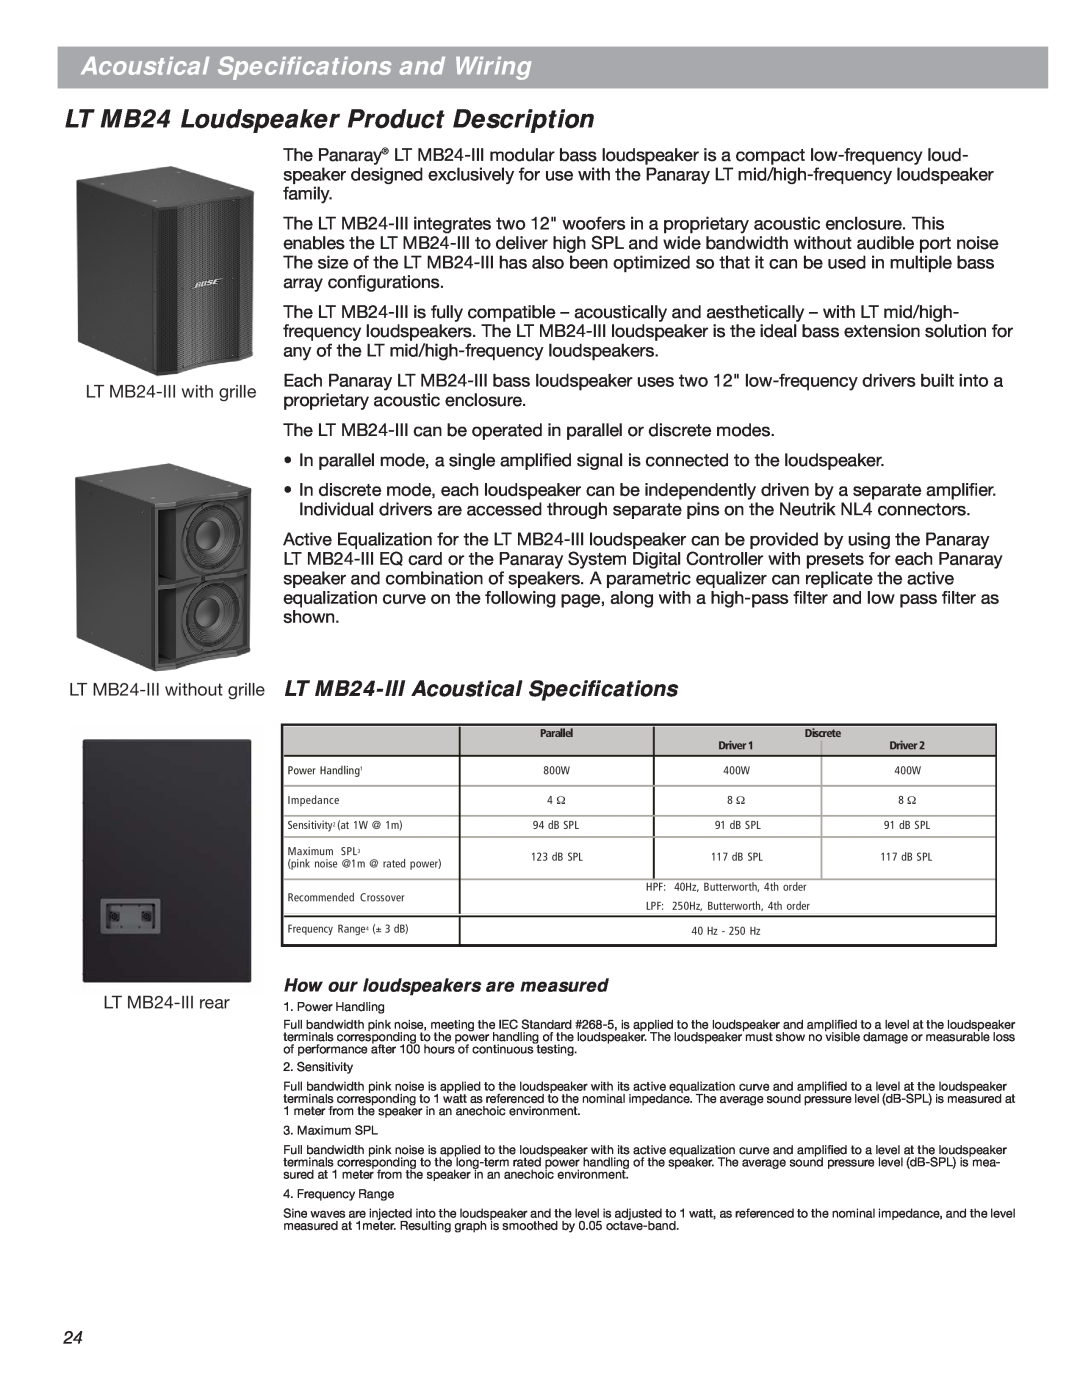 Bose LT Series III, Bose Panaray Loudspeakers LT MB24 Loudspeaker Product Description, LT MB24-IIIAcoustical Speciﬁcations 